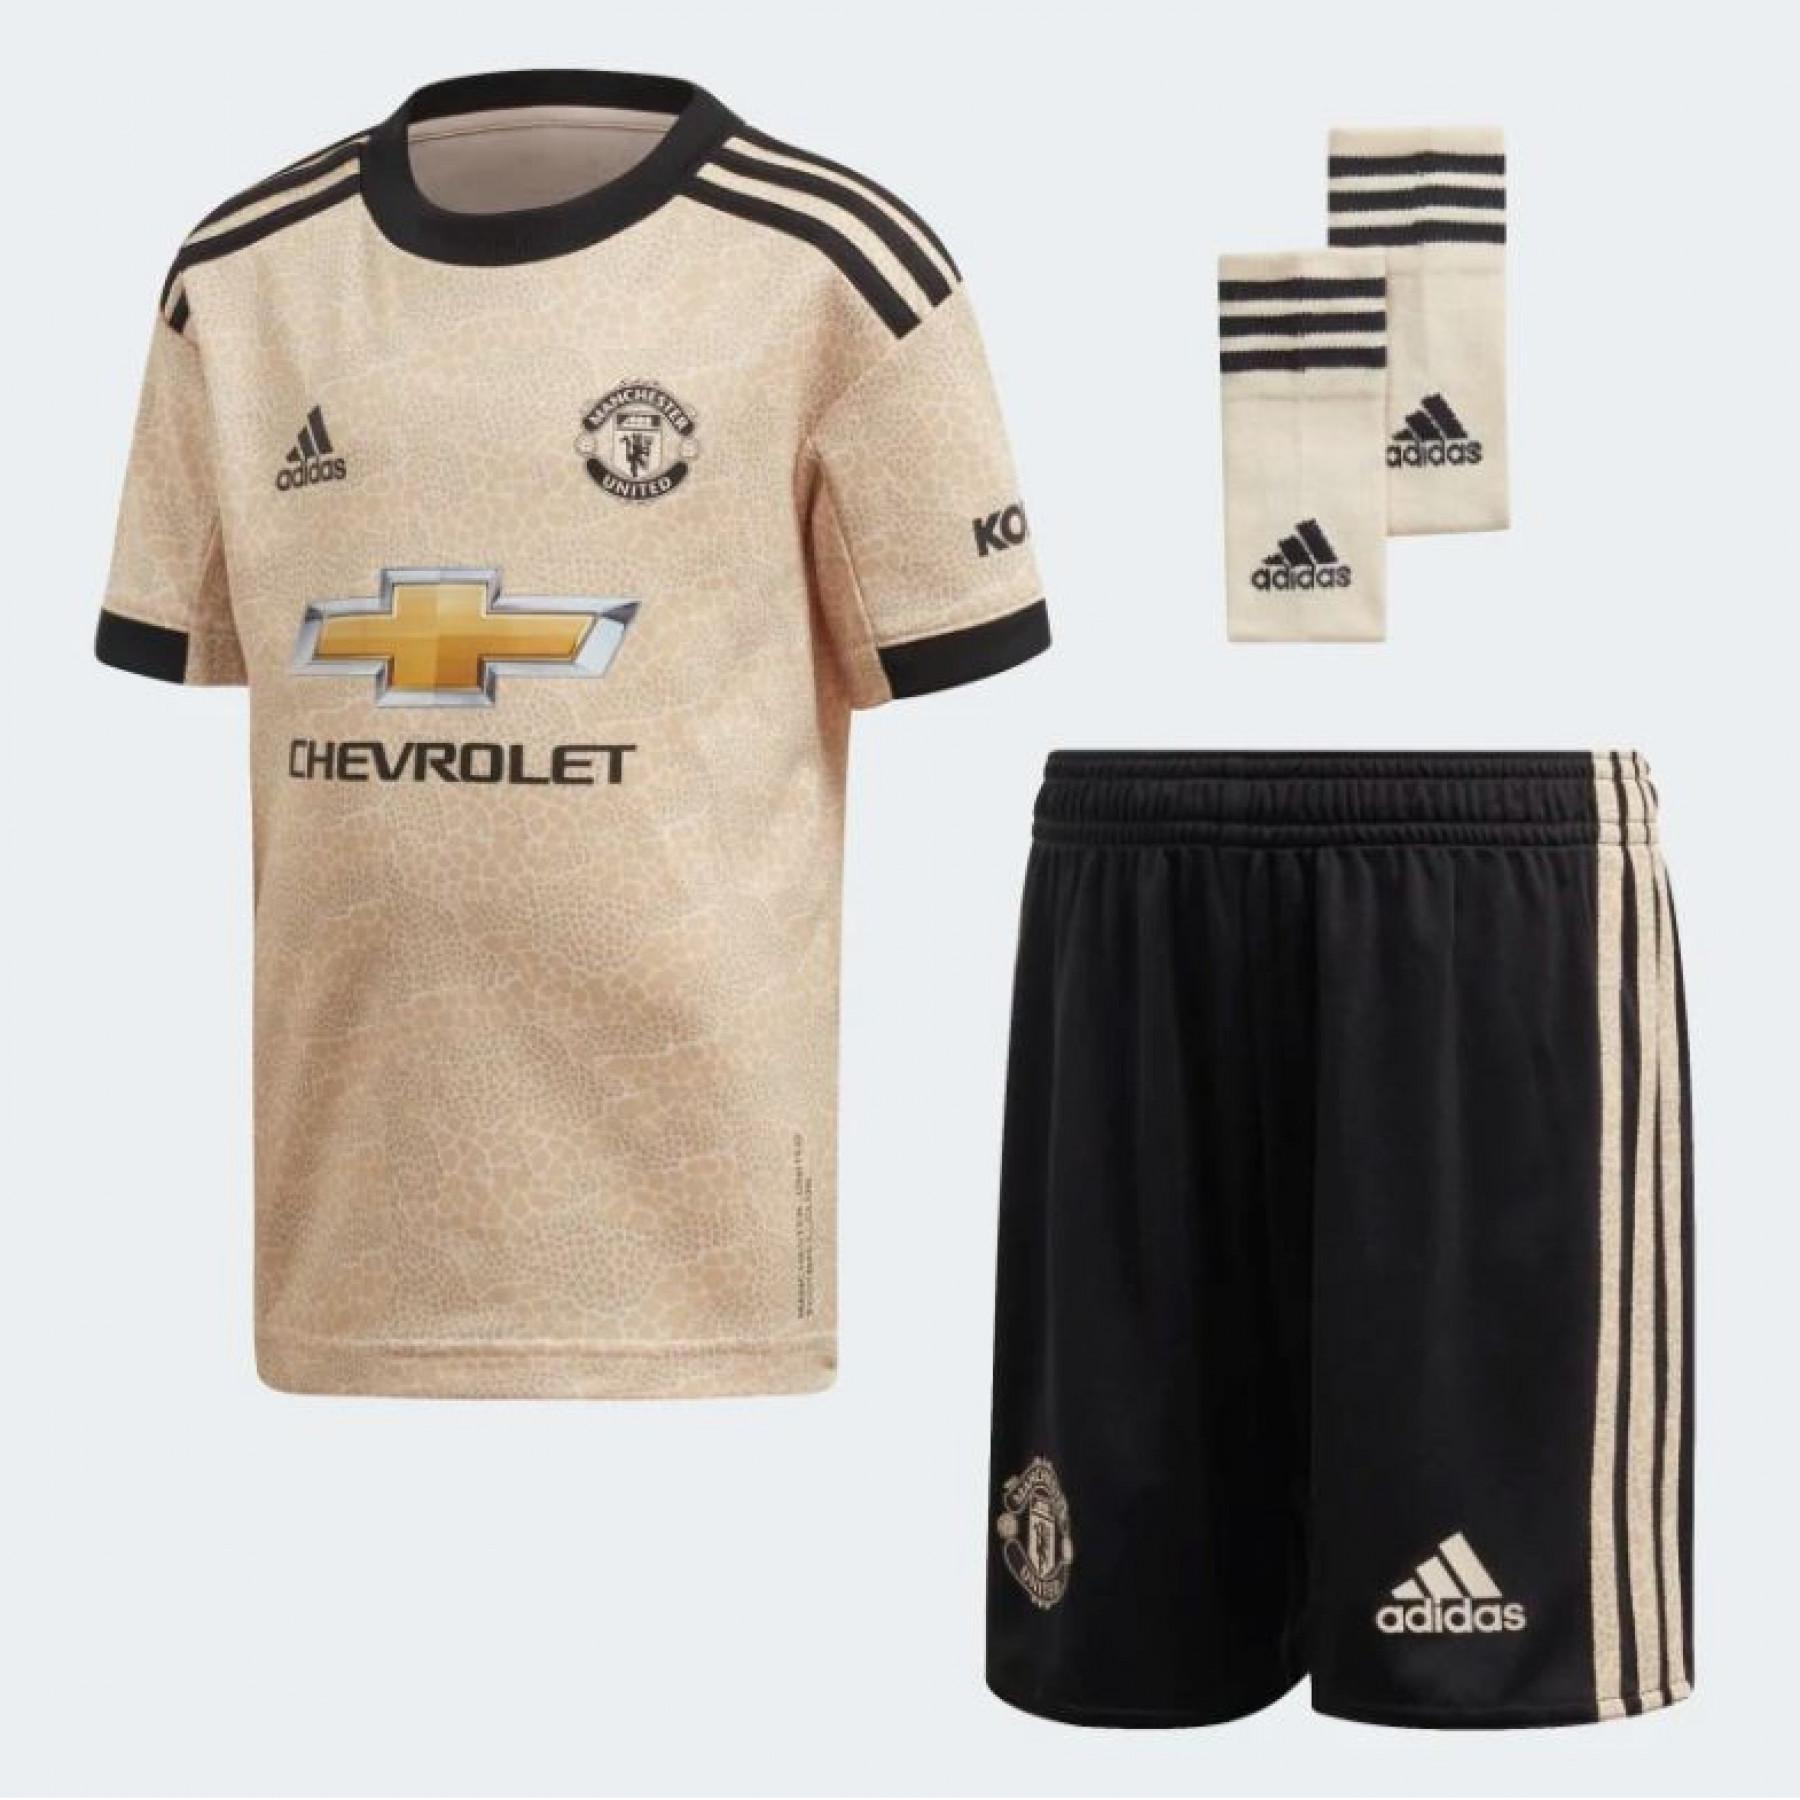 Mini kit all'aperto Manchester United 2019/20